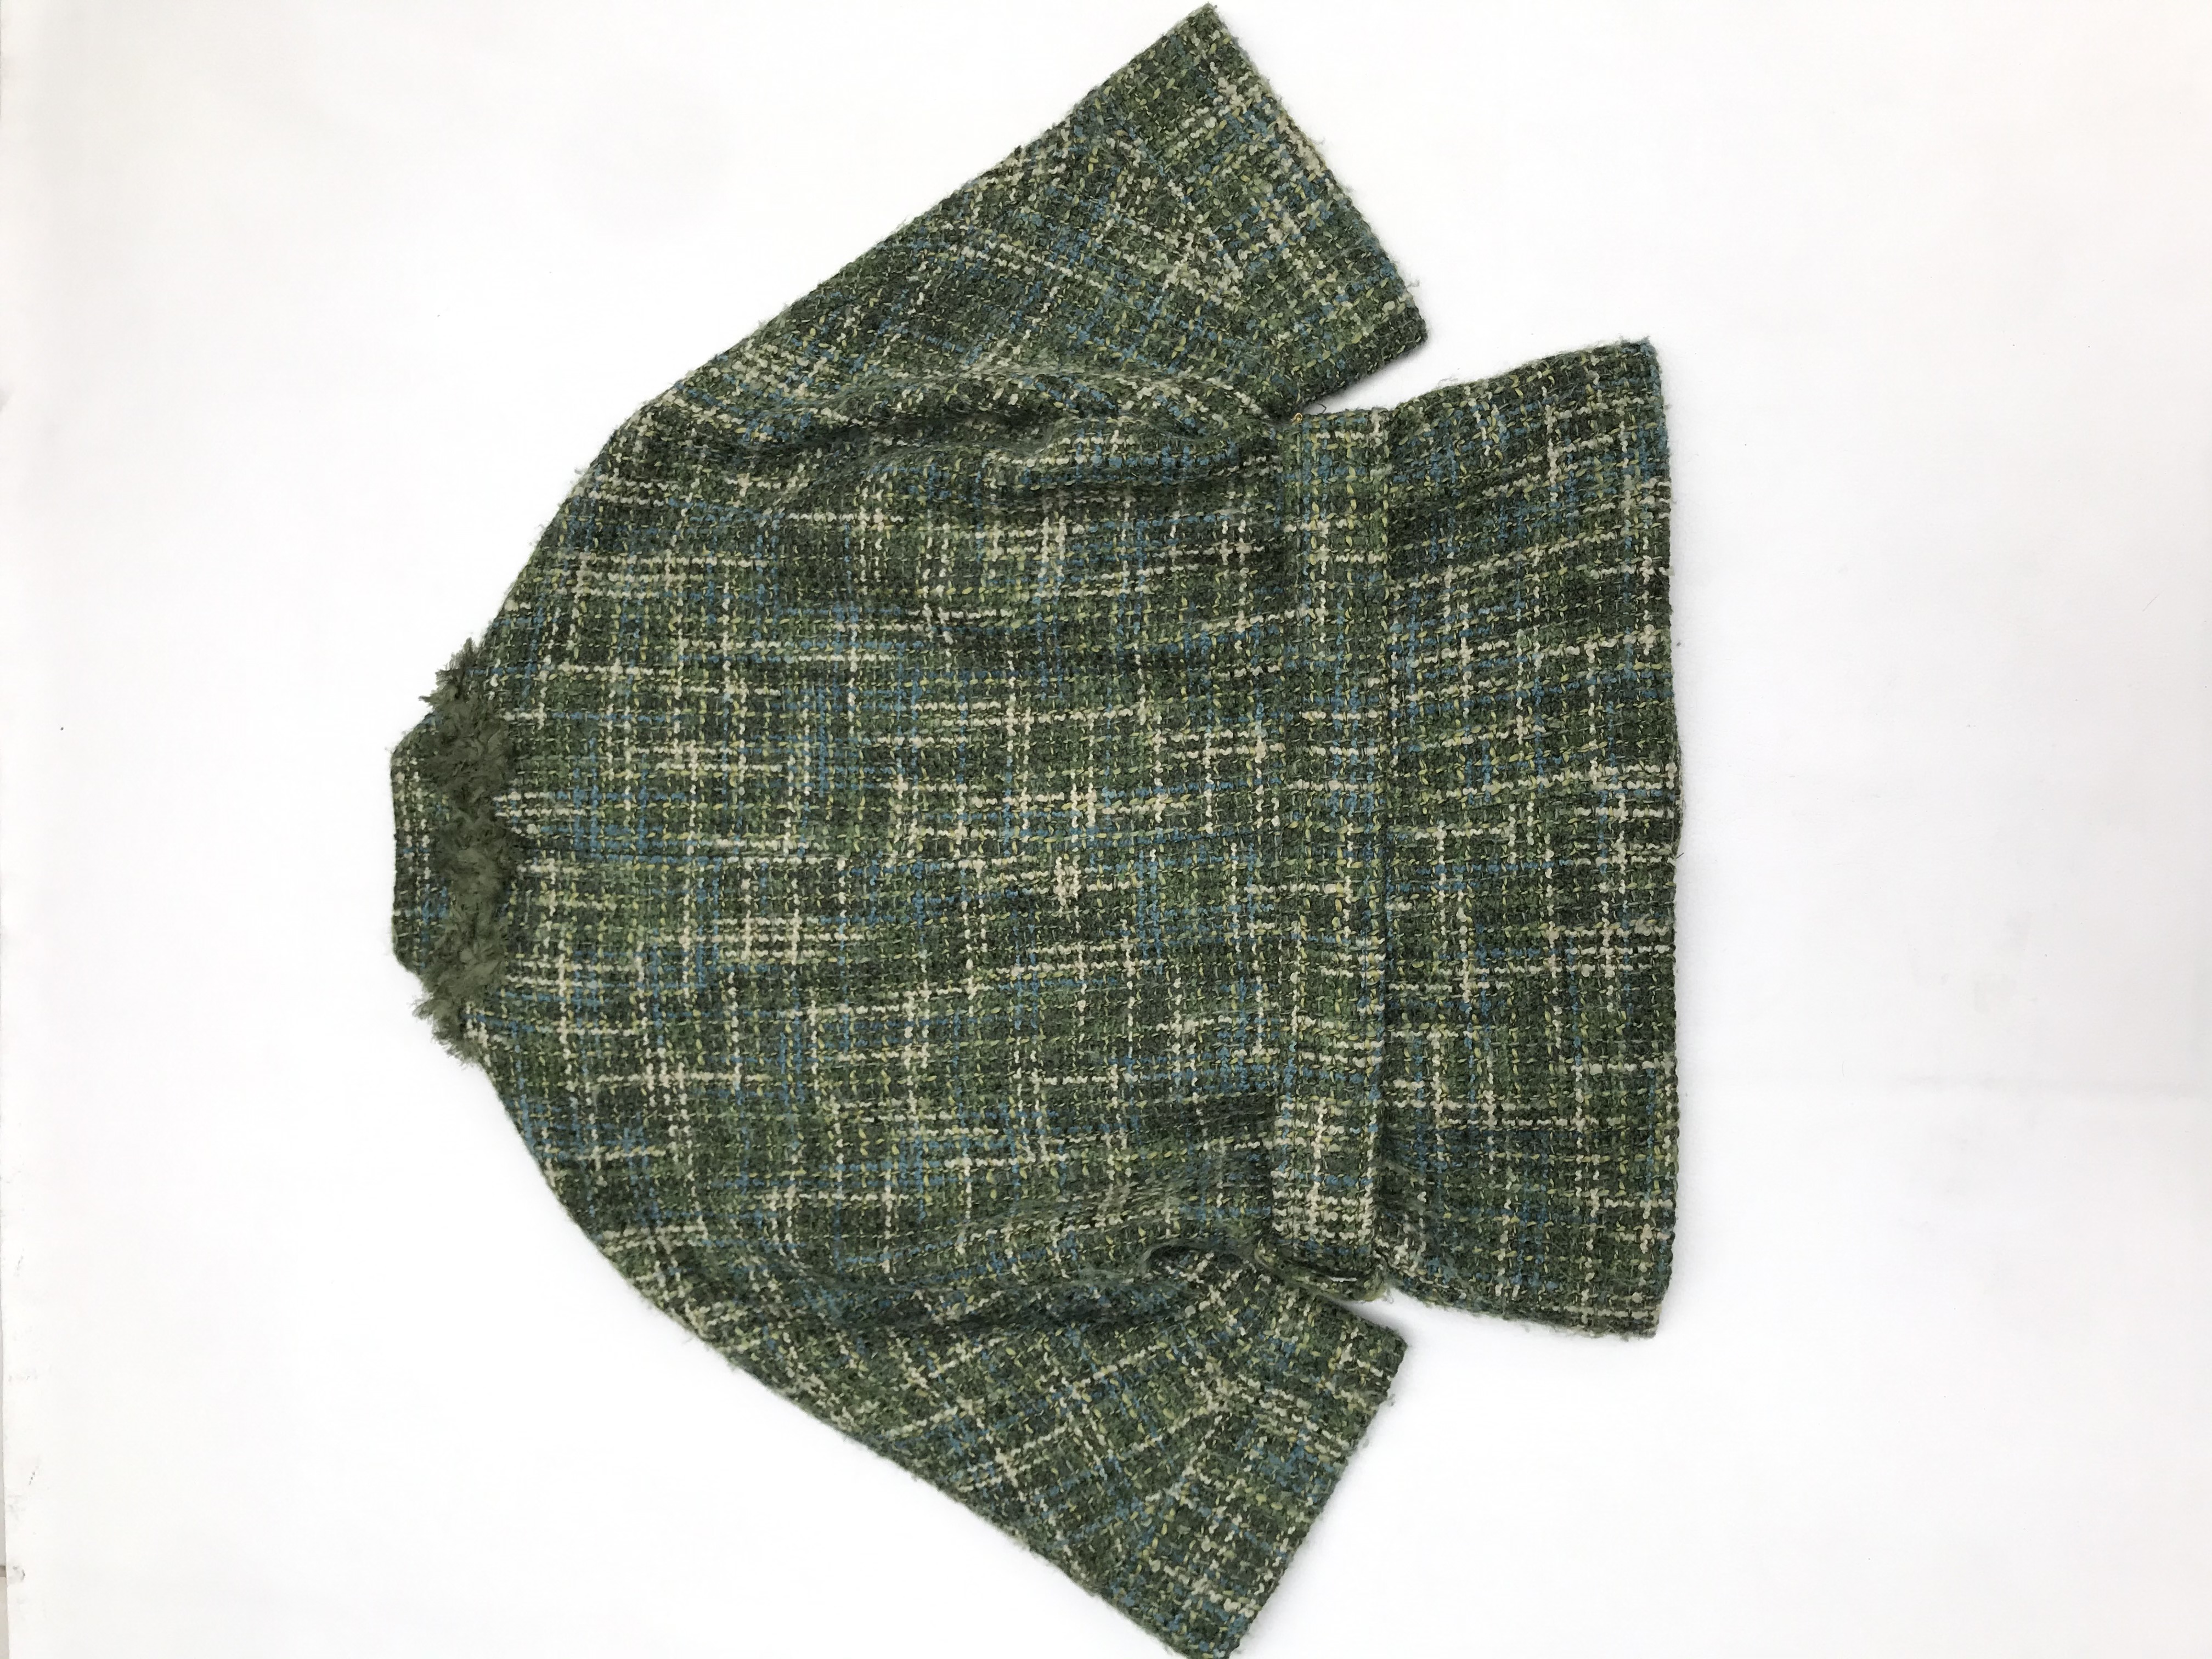 Abrigo Marquis de tweed en tonos verdes, forrado, detalles de flores en el cuello, cierre delantero y cinto para amarrar